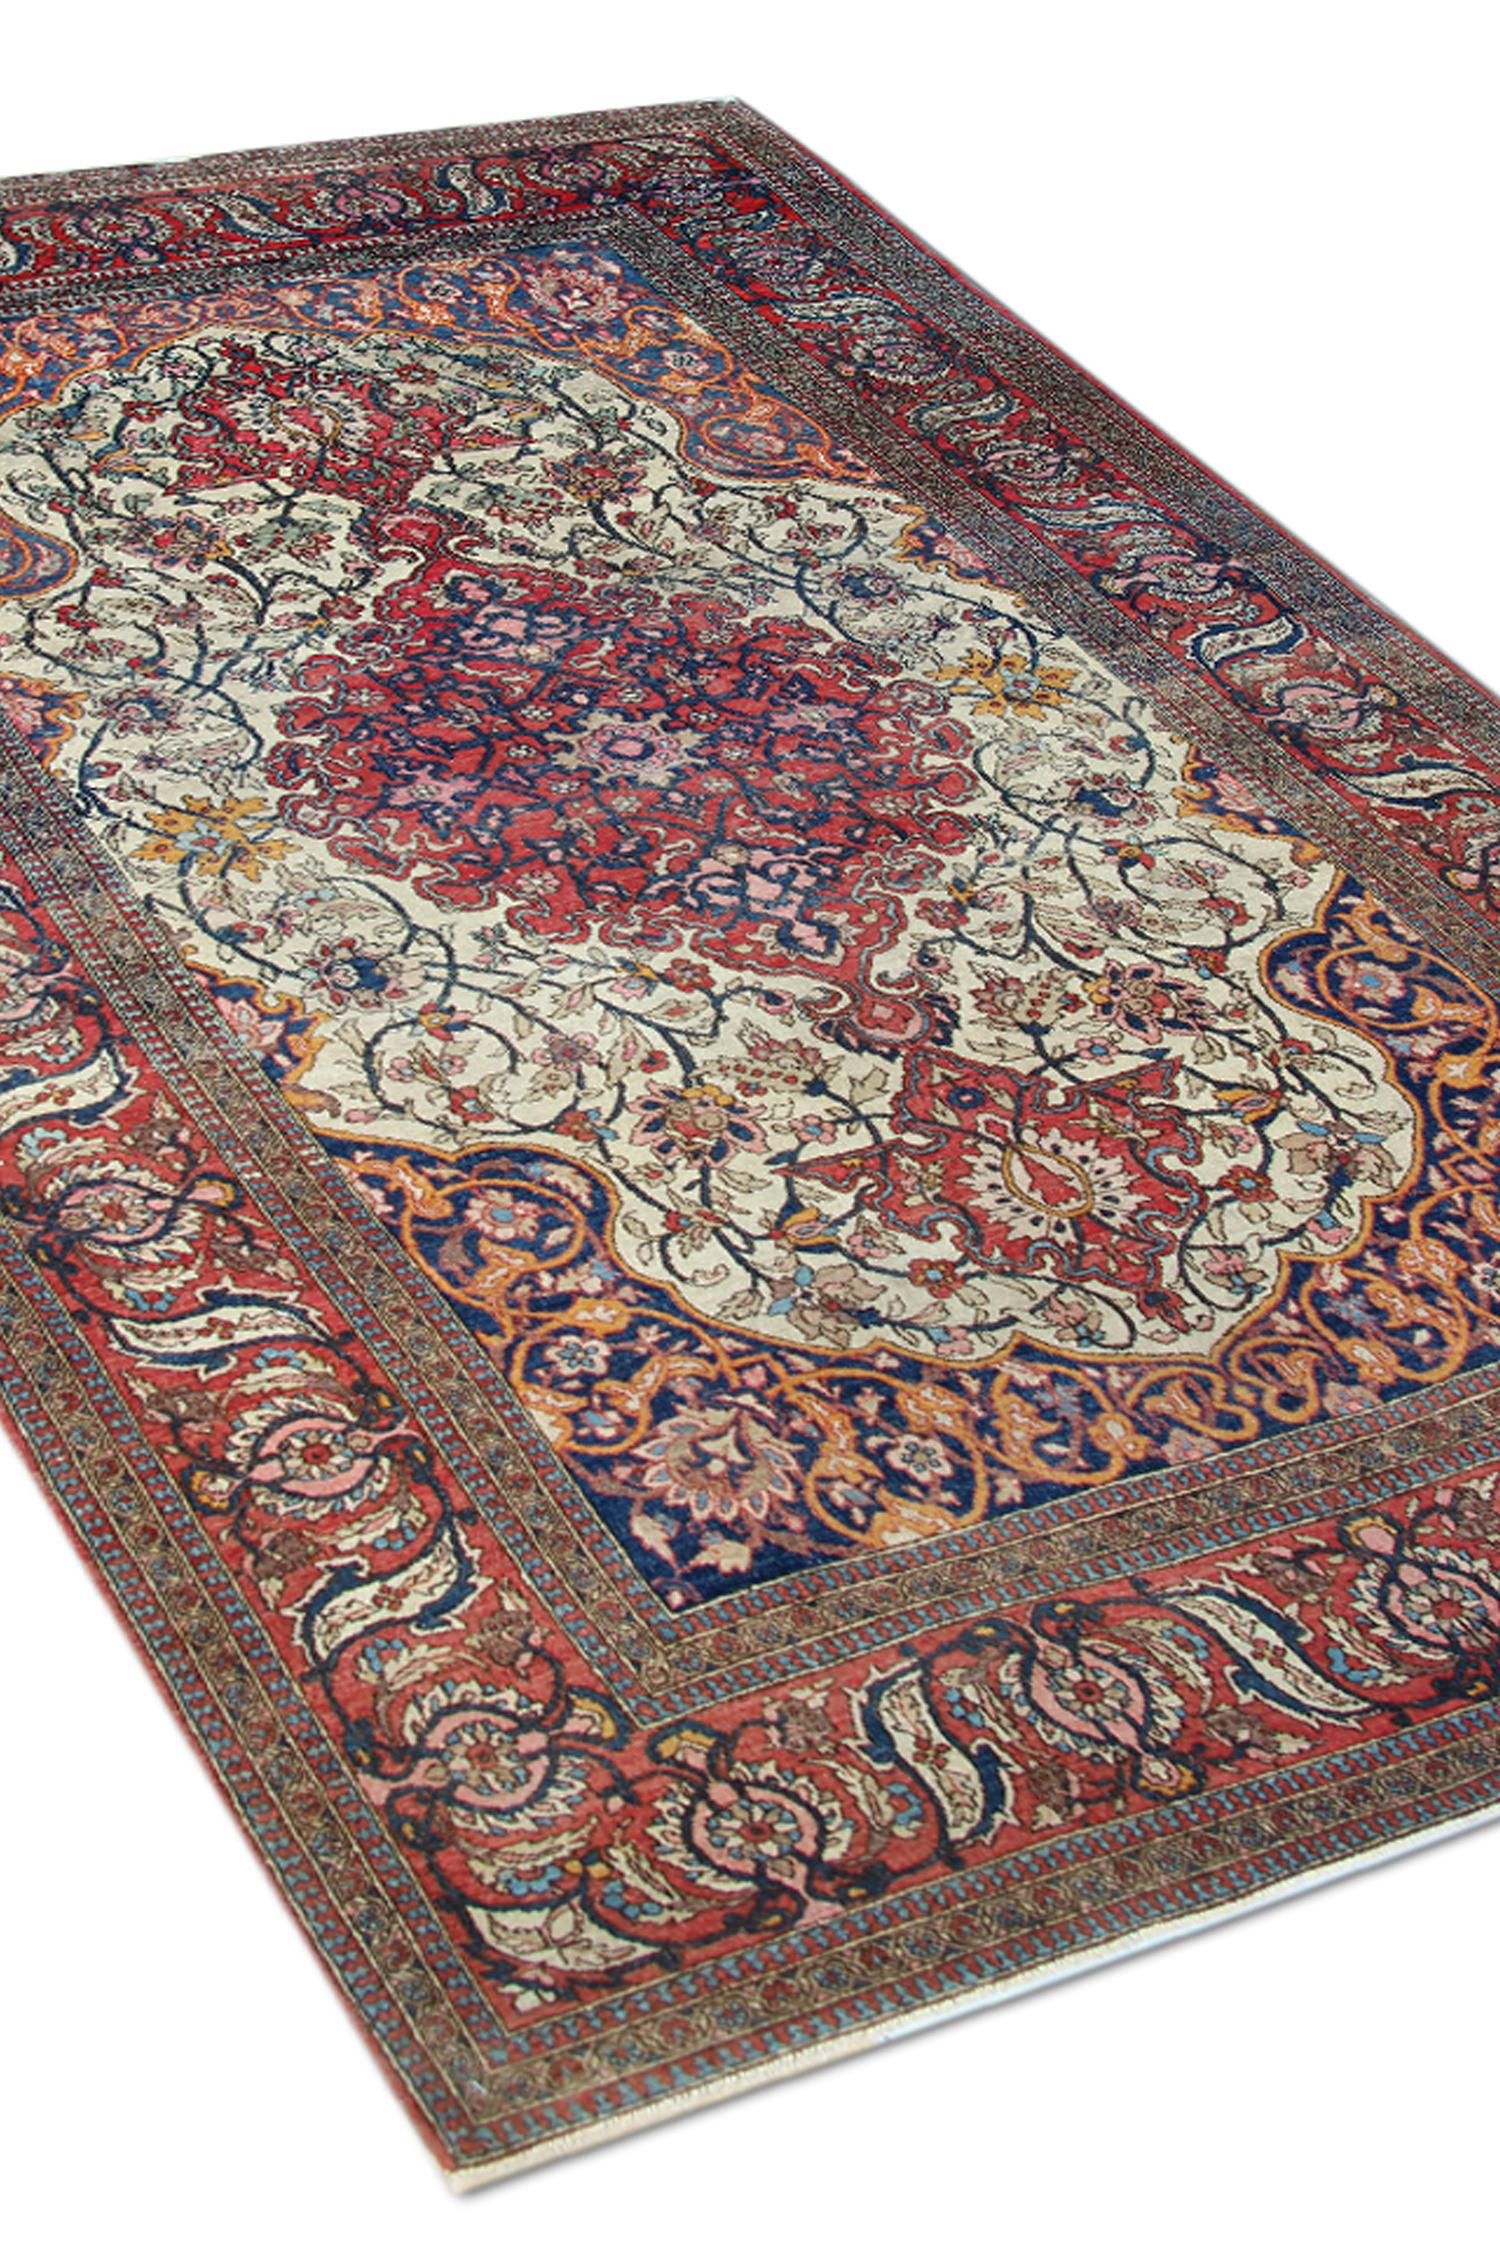 Ein antiker zentraler Medaillonteppich ist ein schönes Beispiel für einen antiken Teppich, der um 1900 gewebt wurde. Handgeflochten mit aufwändigen Details in orange-blauen und roten Akzentfarben. Das Design besteht aus einem elfenbeinfarbenen